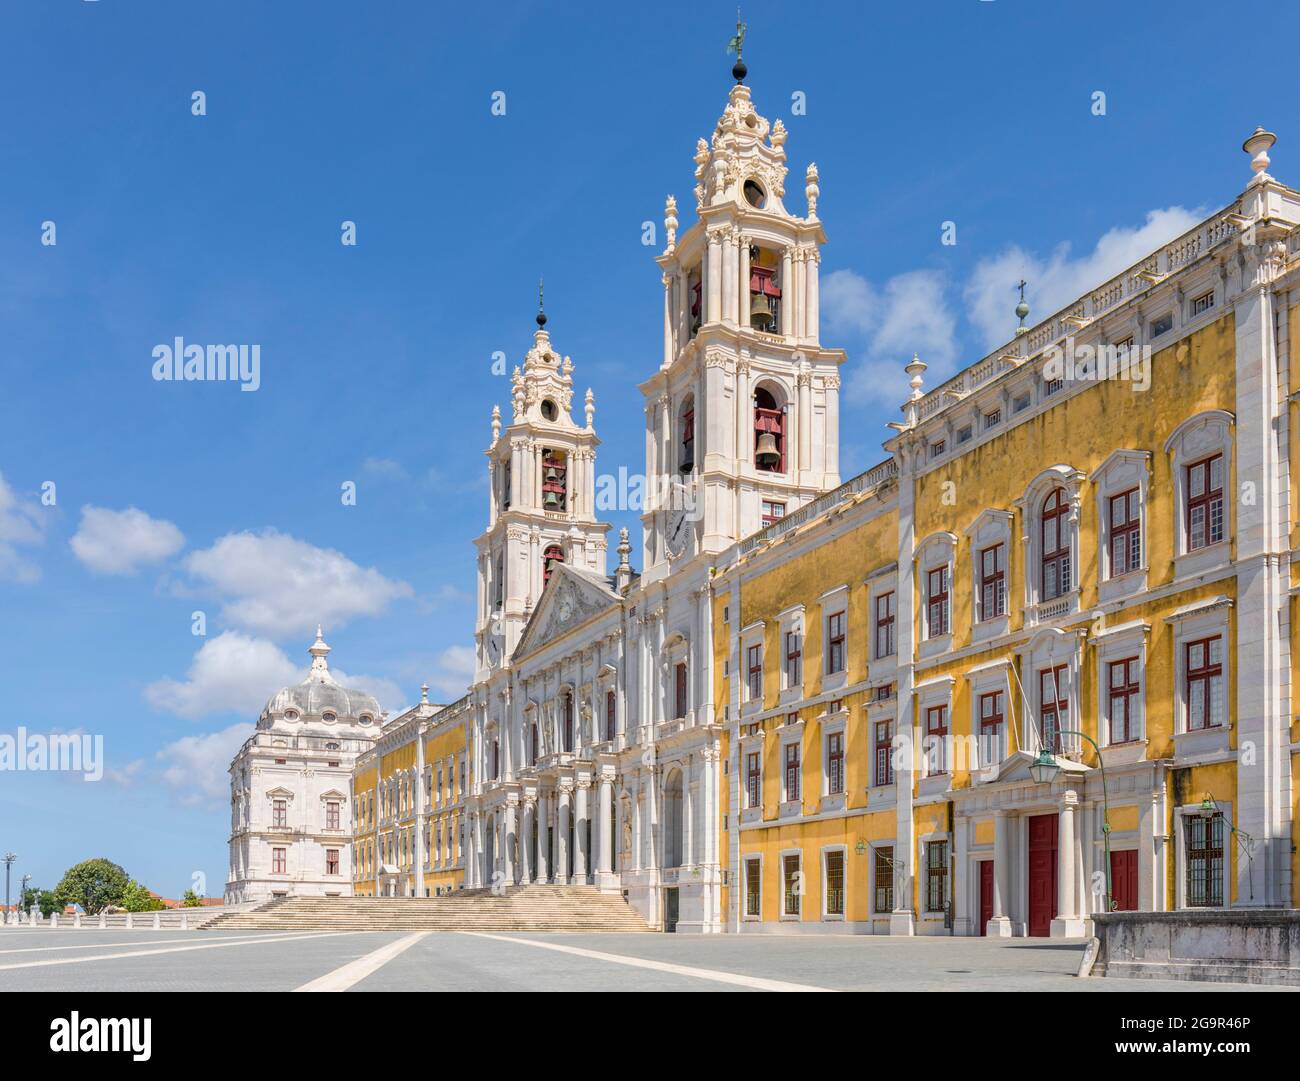 La façade principale du Palais de Mafra, quartier de Lisbonne, Portugal. Il est également connu sous le nom de Palais-couvent de Mafra et le bâtiment royal de Mafra. Banque D'Images